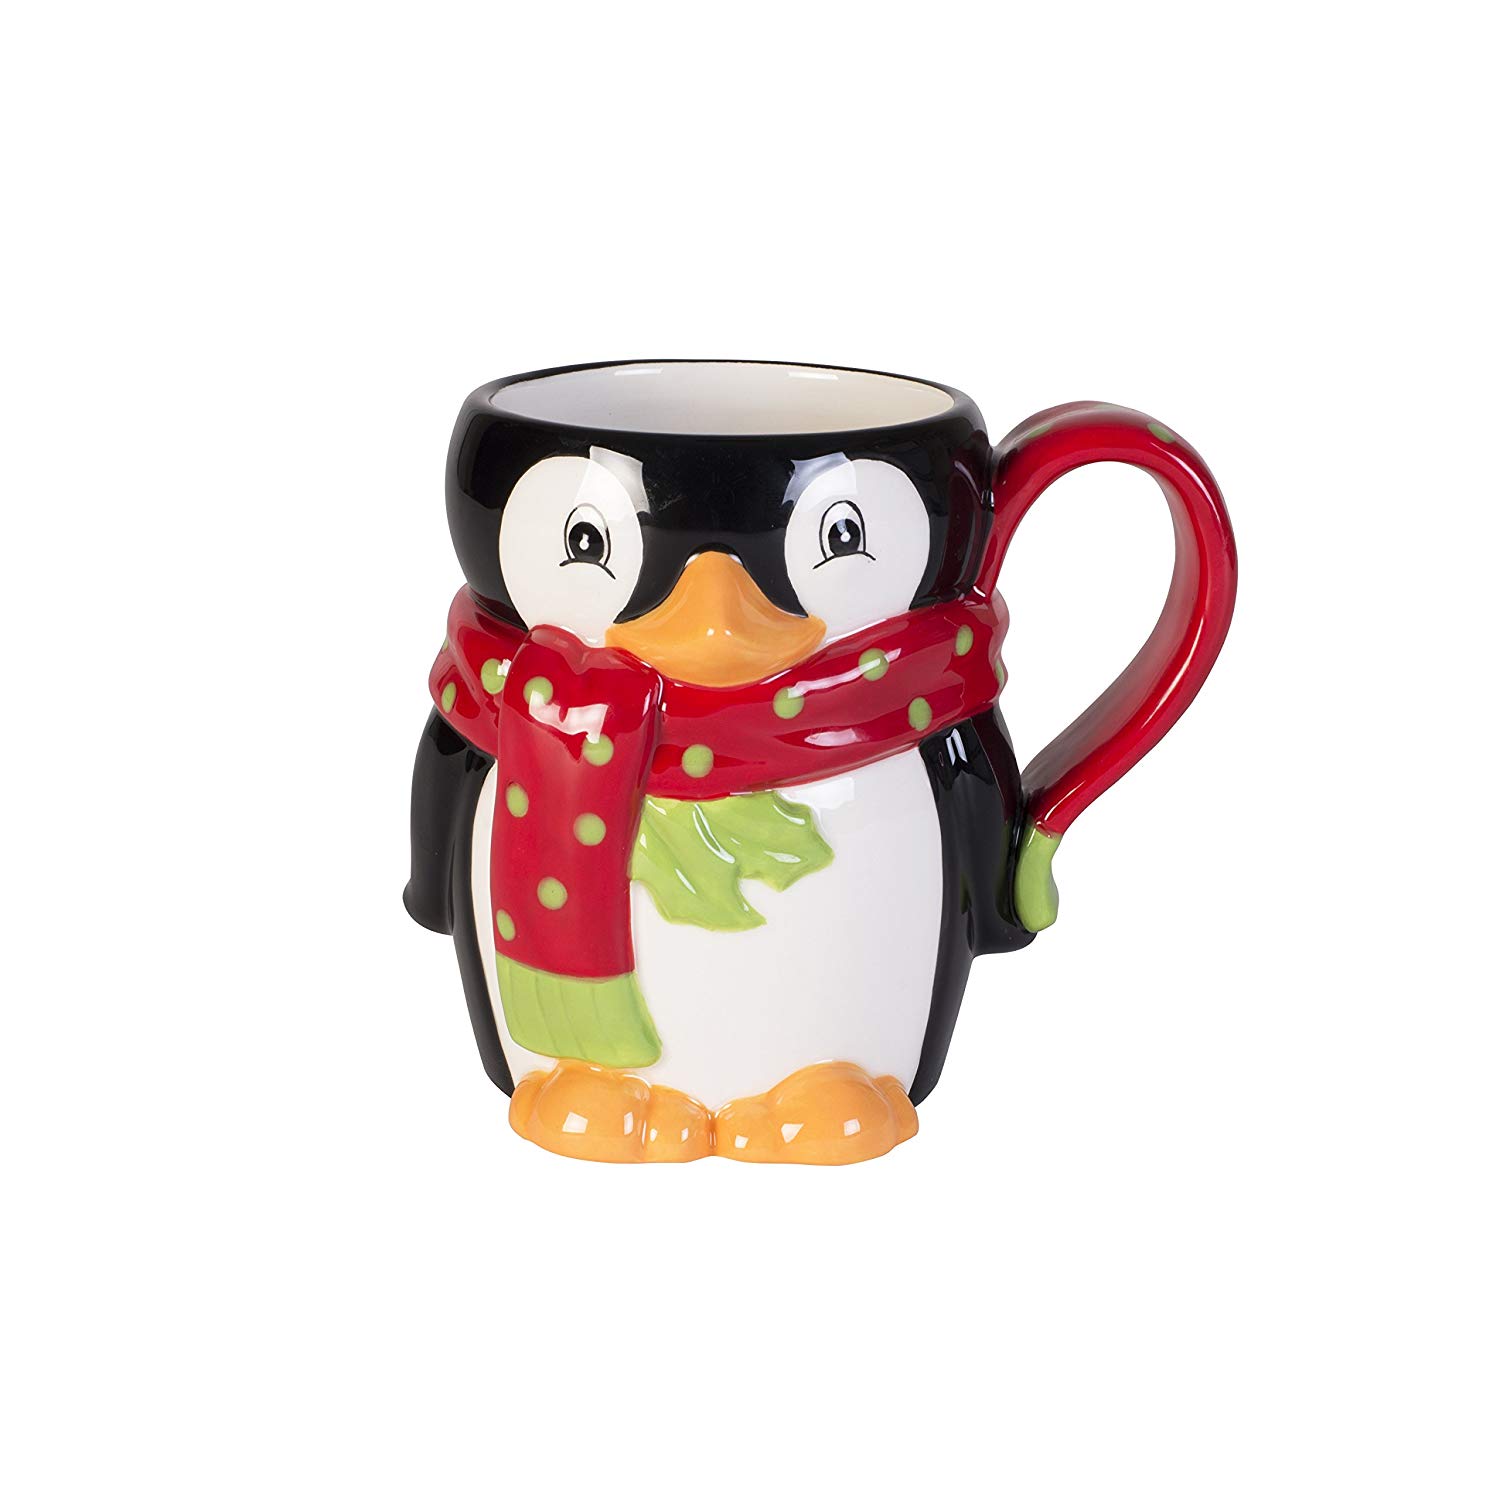 Fitz and Floyd 49-563 Merry Mug Ceramic Penguin Coffee Mug, 16-Ounce